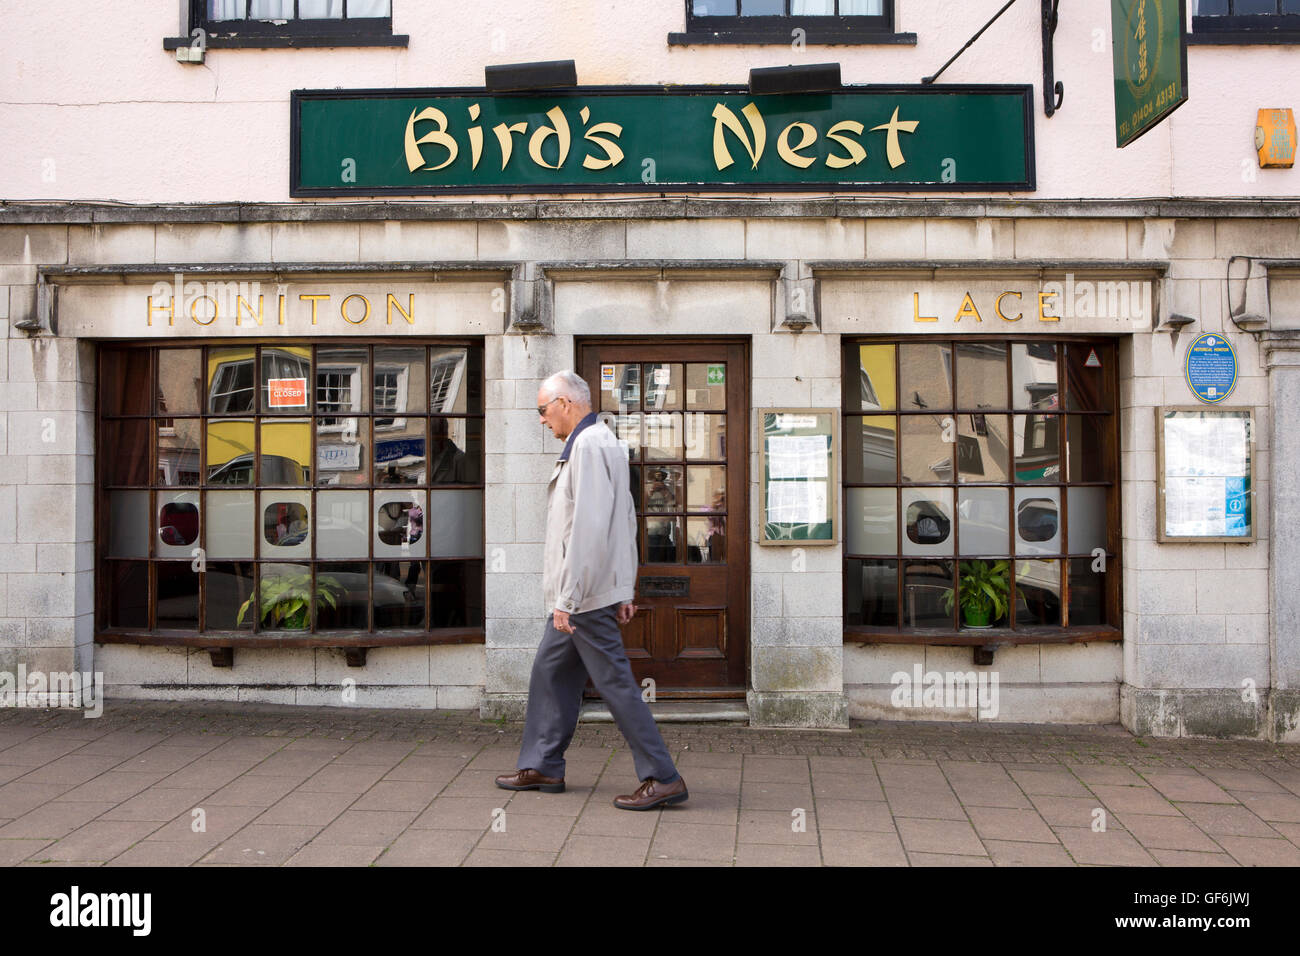 Royaume-uni, Angleterre, Devon, Honiton, High Street, l'homme marchant passé Birds Nest Restaurant chinois dans l'ancien magasin de dentelle Honiton Banque D'Images